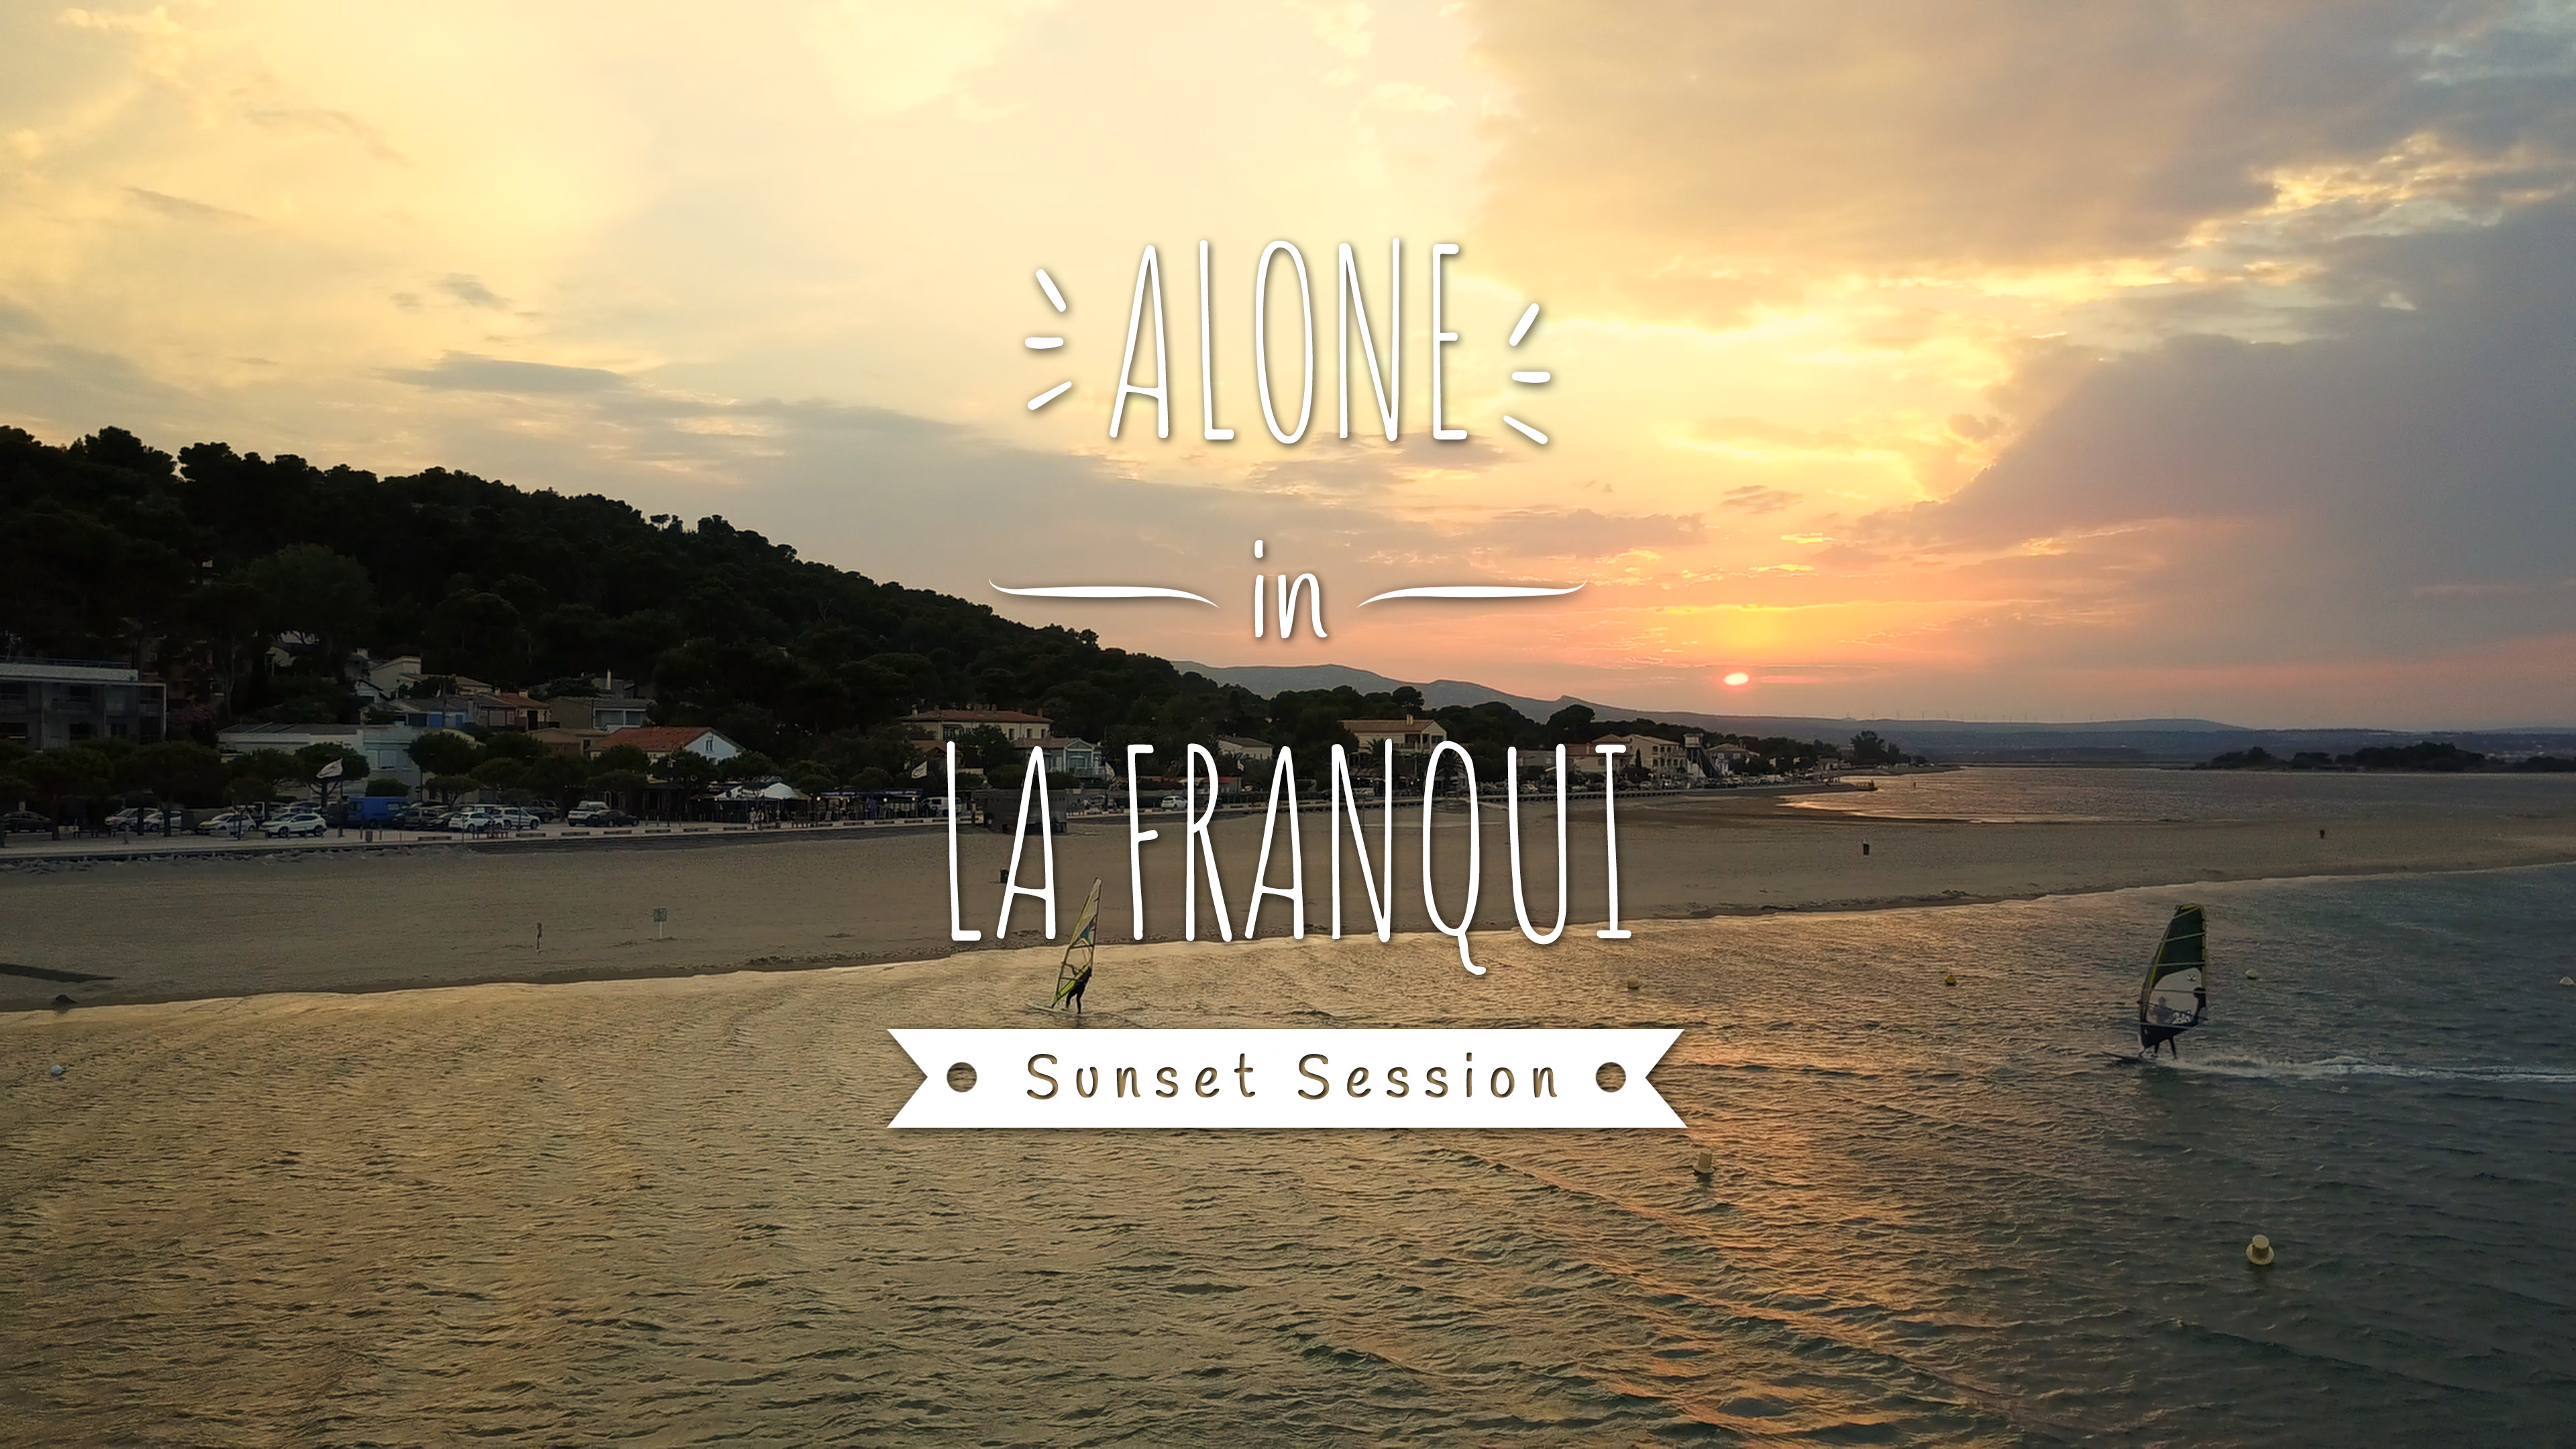 Alone in La Franqui